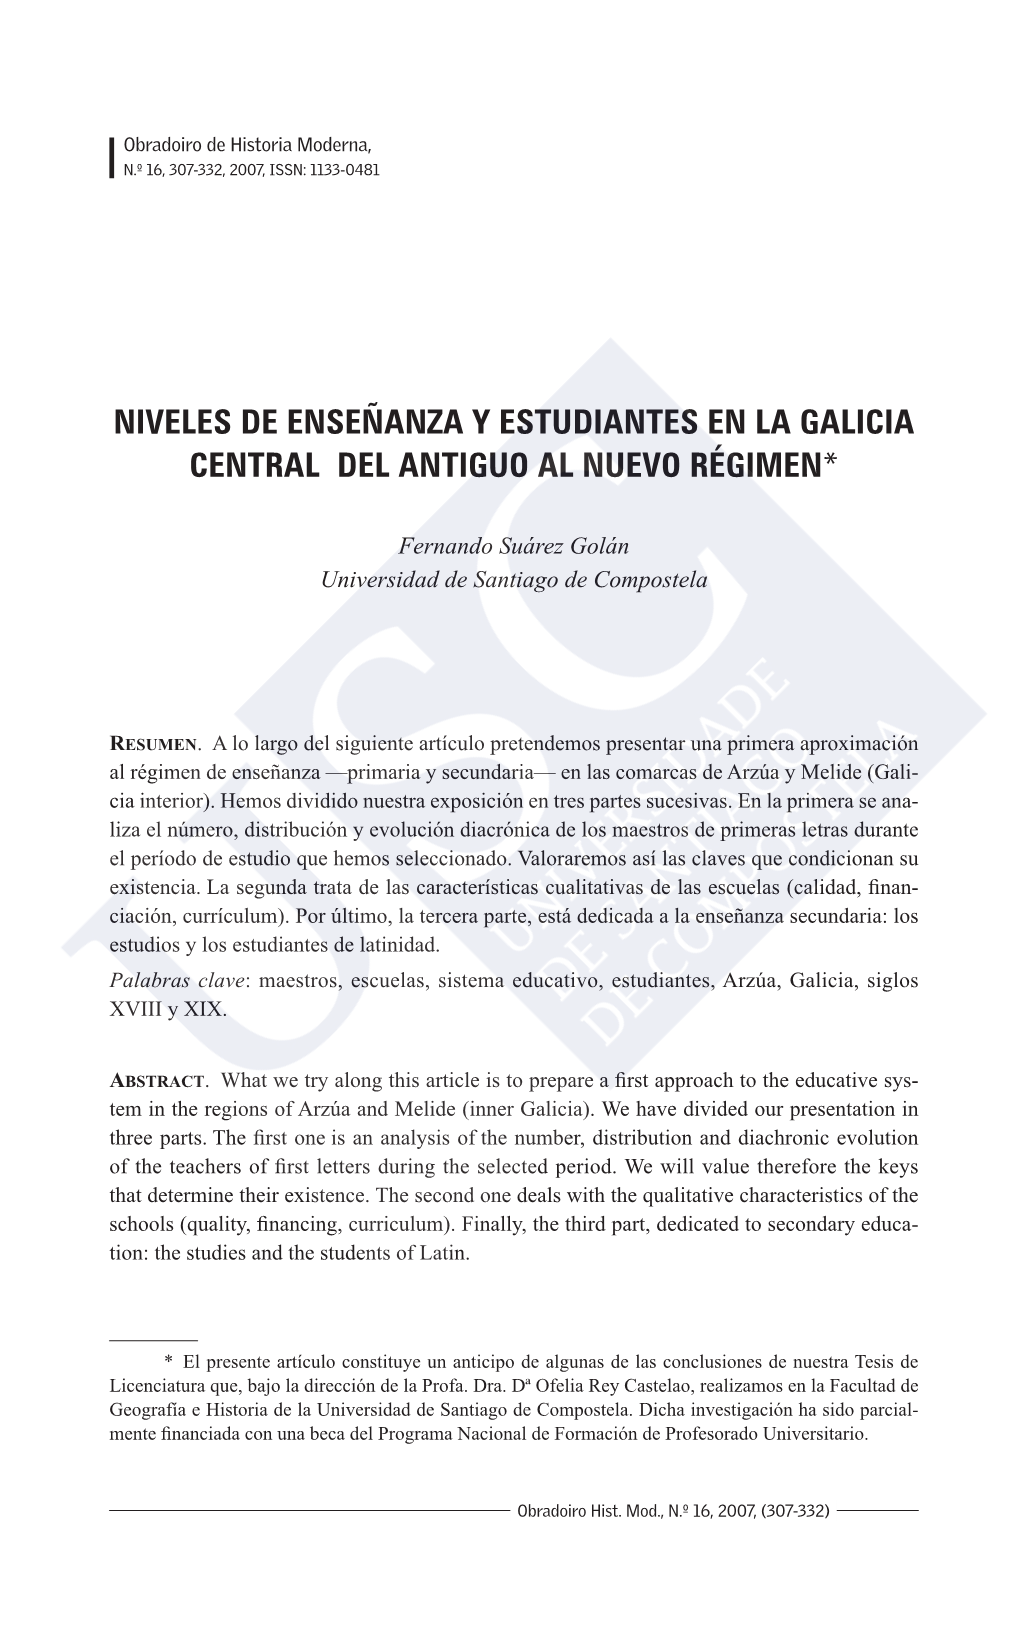 Niveles De Enseñanza Y Estudiantes En La Galicia Central Del Antiguo Al Nuevo Régimen*